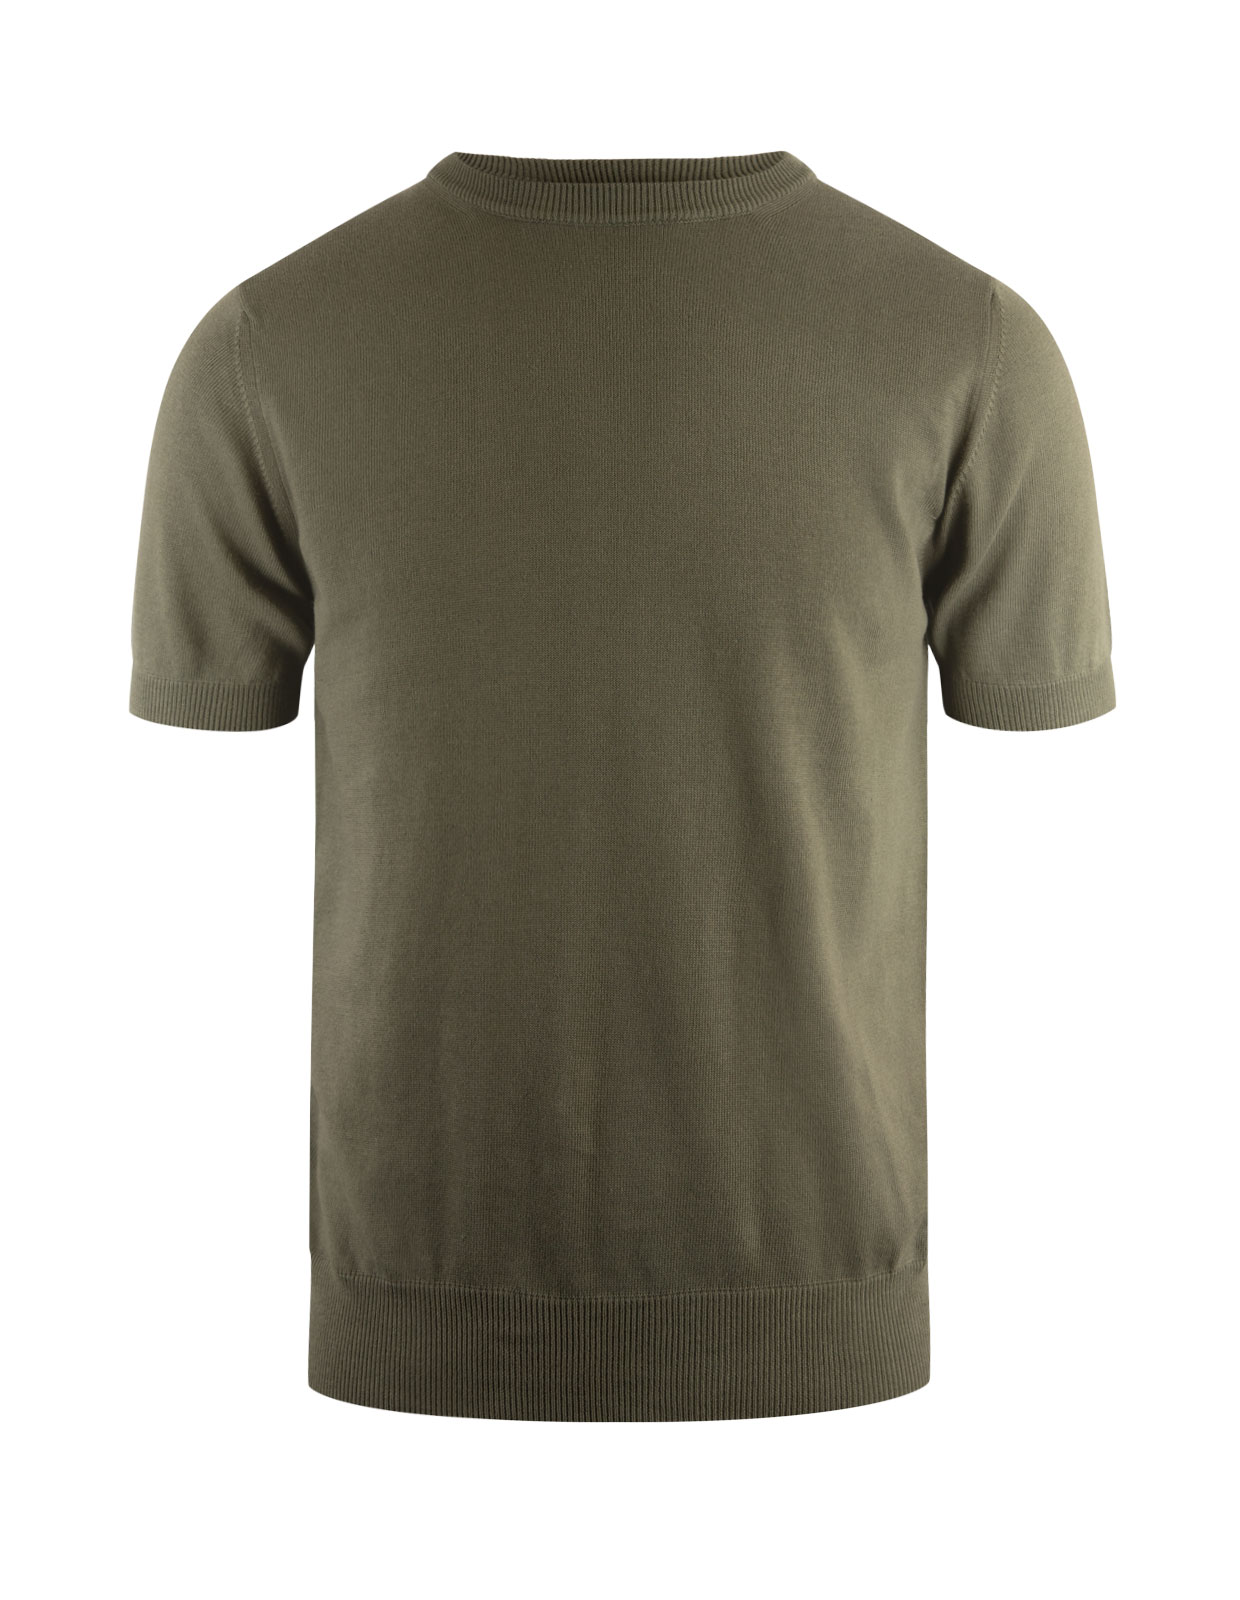 T-shirt Finstickad Bomull Militärgrön Stl S